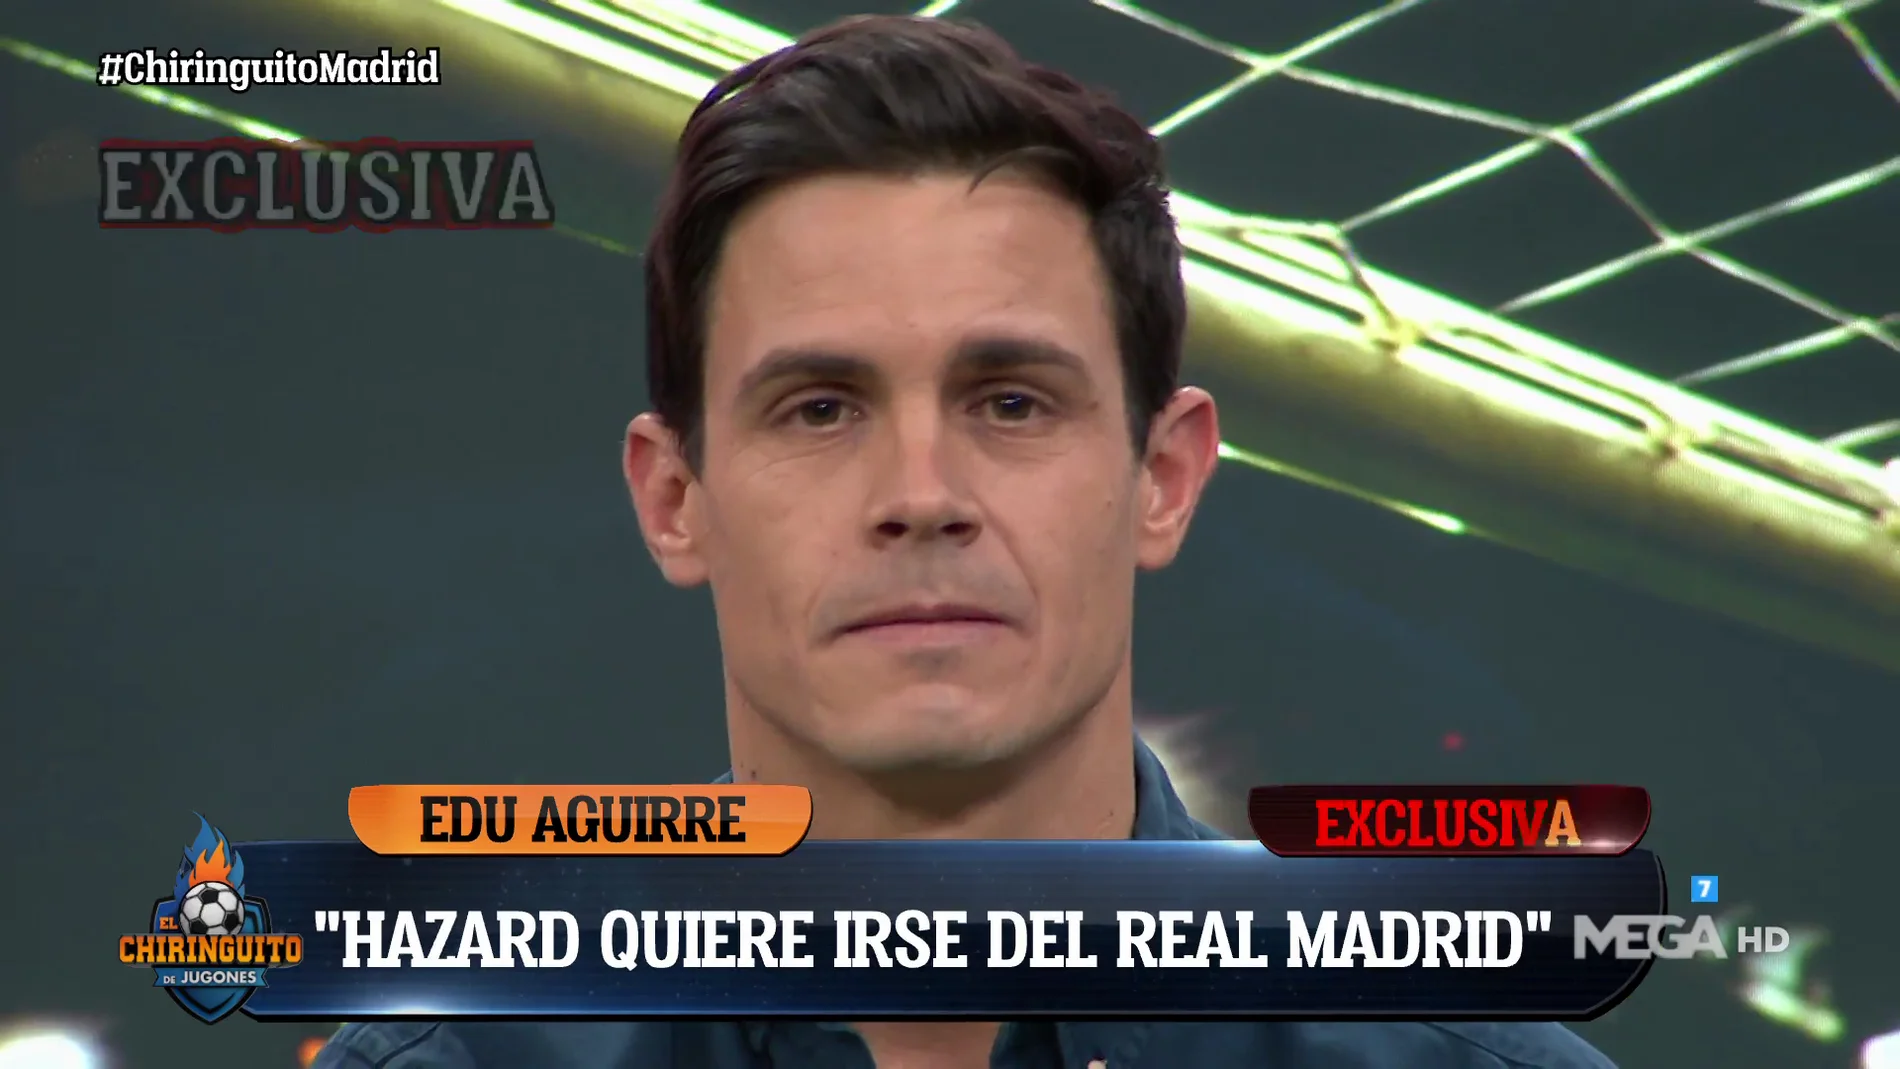 Edu Aguirre: "Hazard quiere abandonar el Real Madrid"